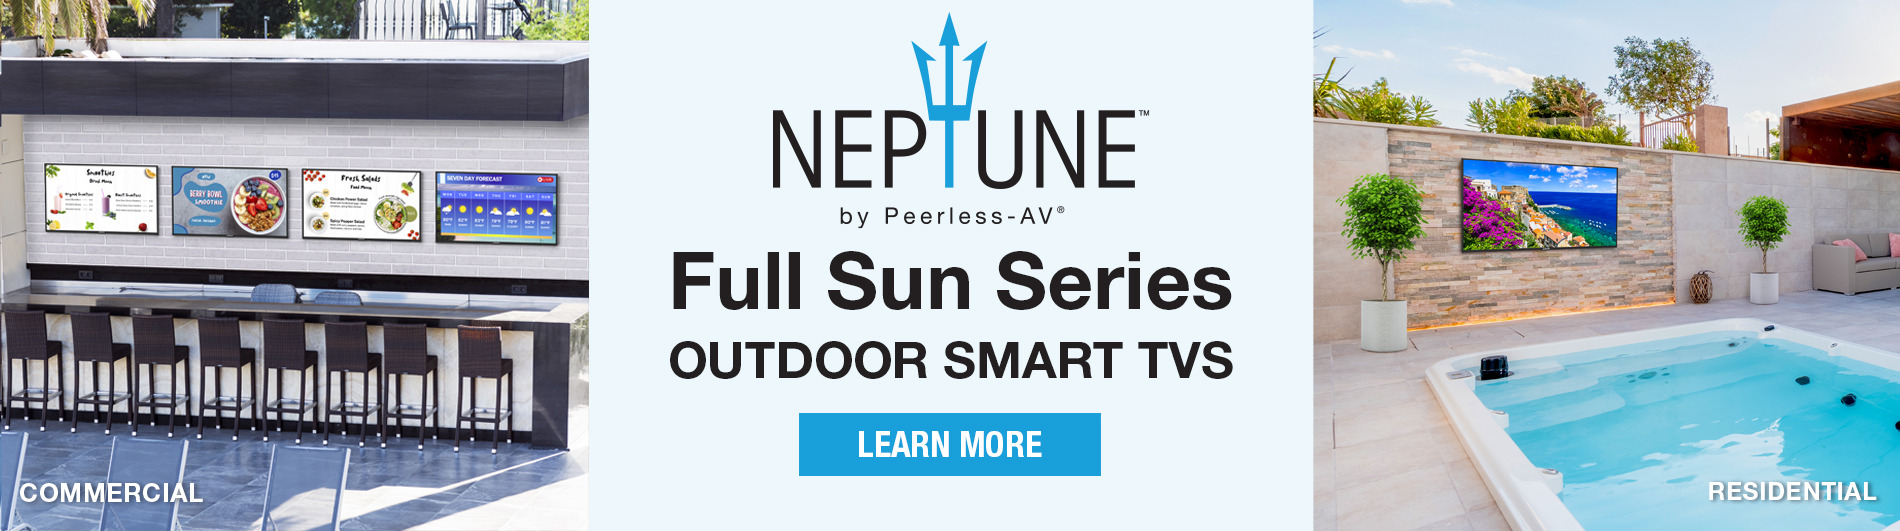 Neptune Full Sun Series